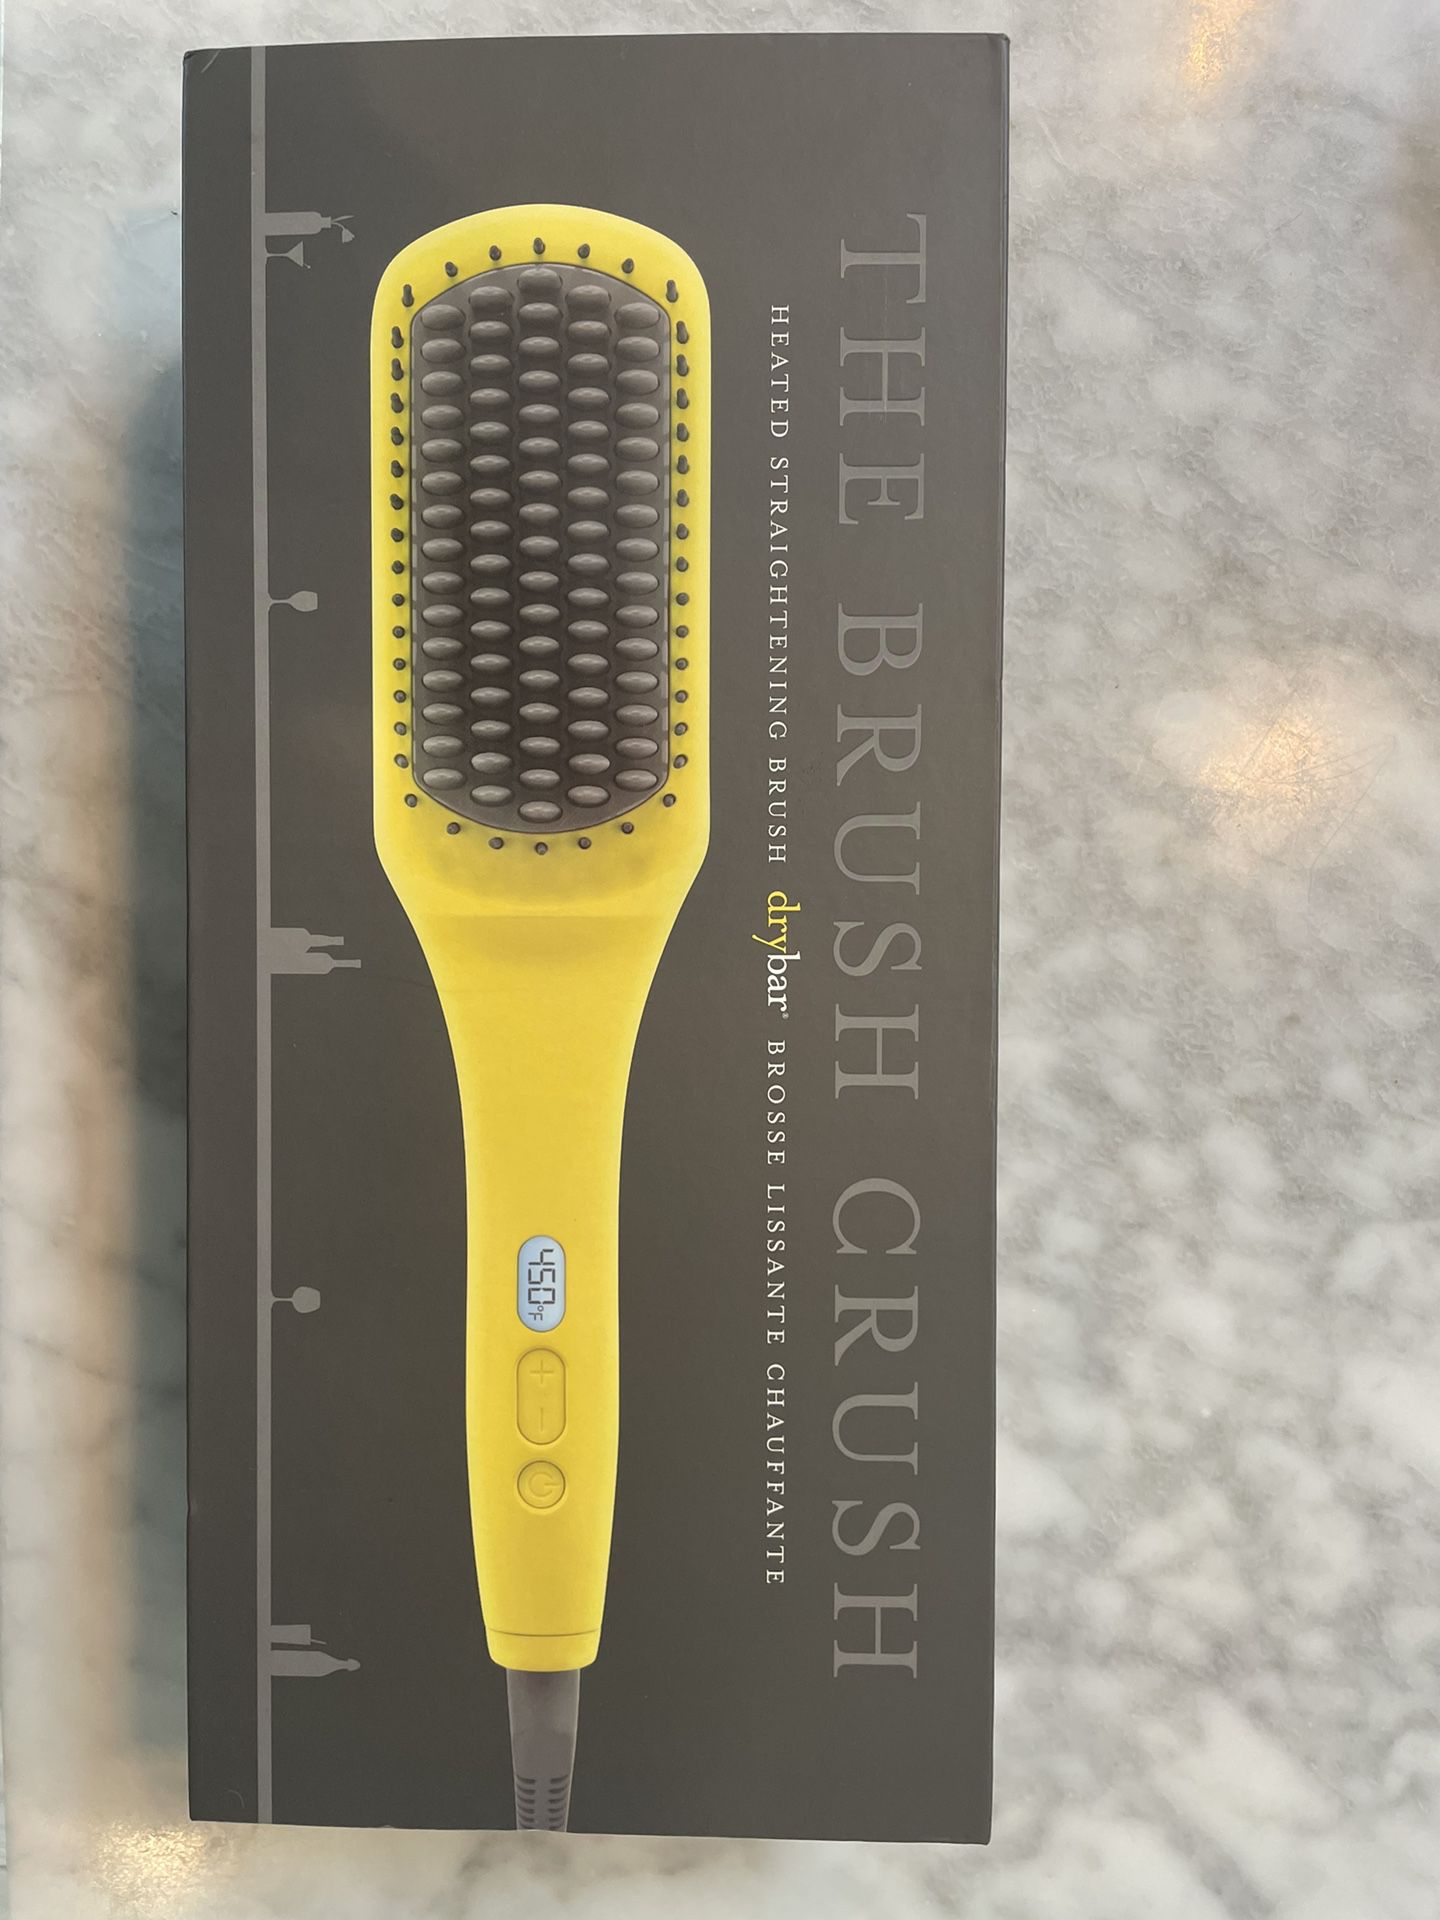 The brush crush Hair Straightener